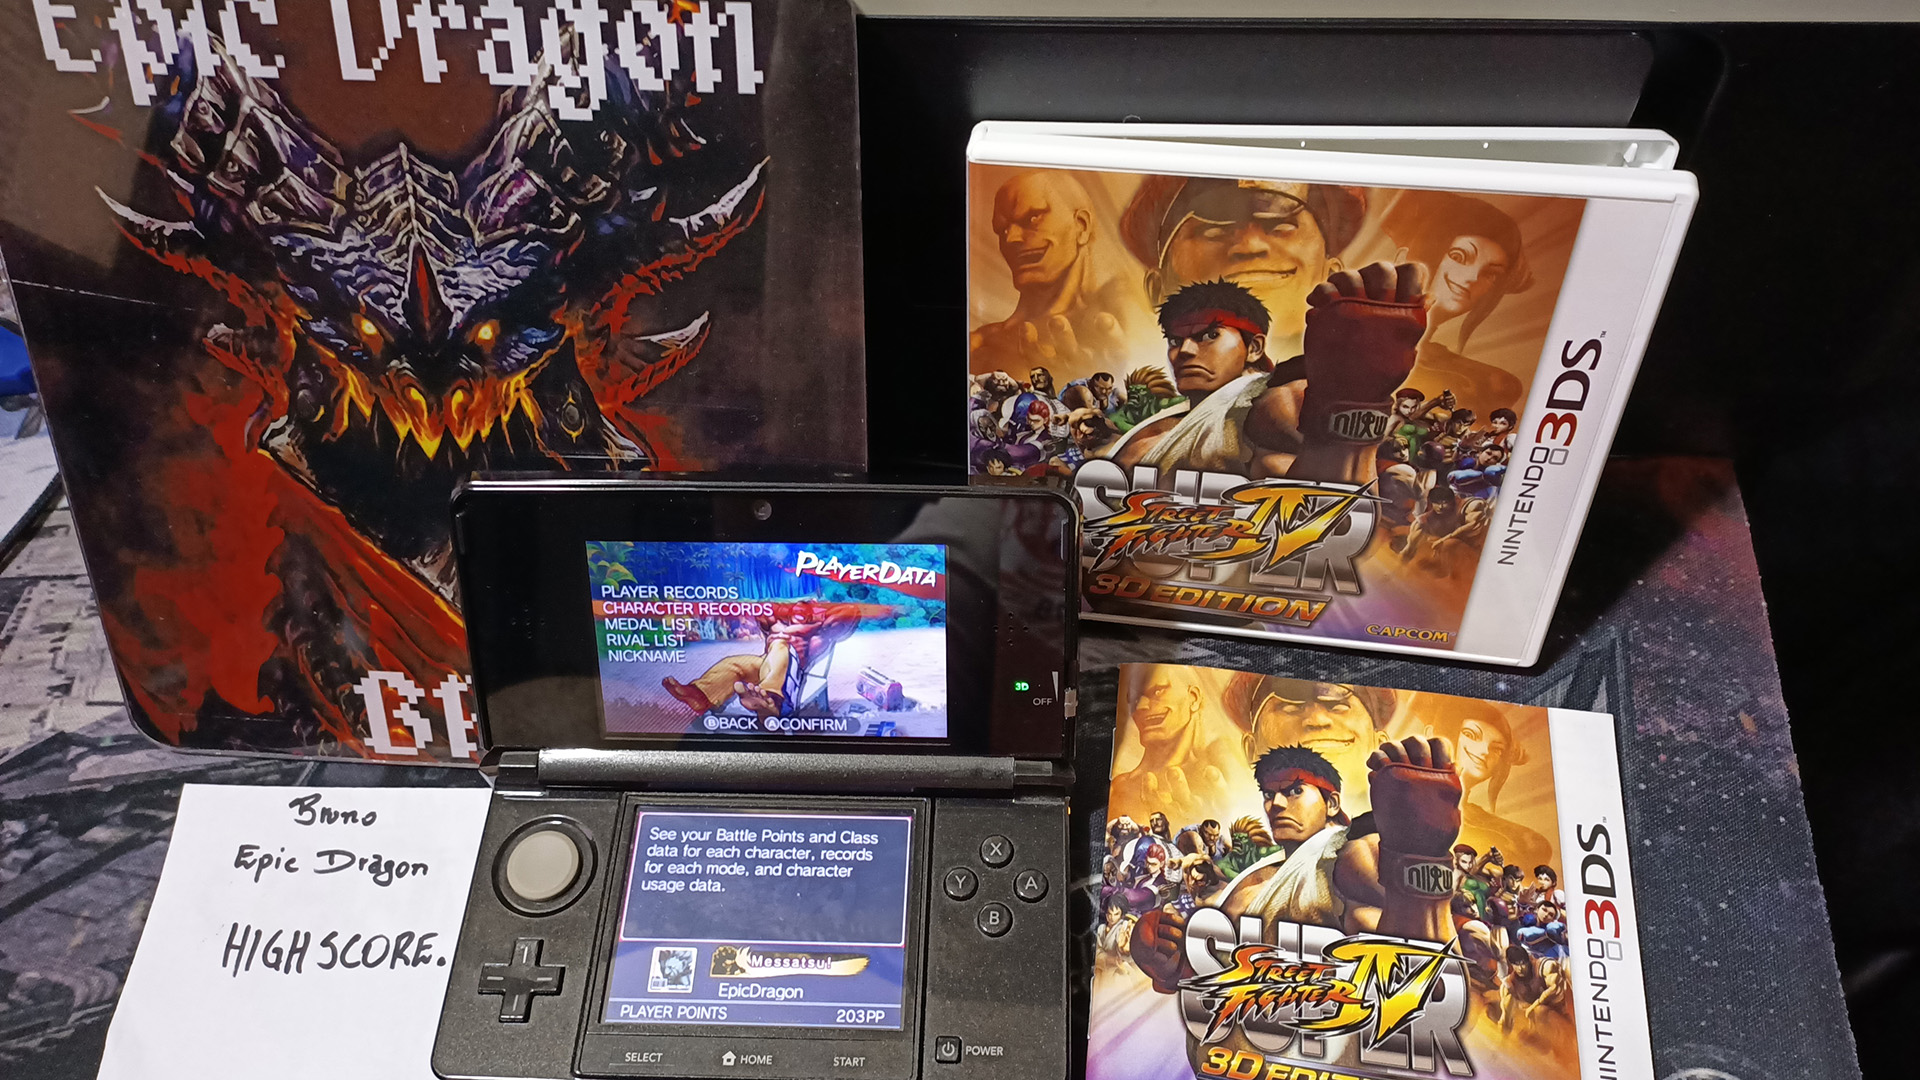 EpicDragon: Super Street Fighter IV 3D Edition: Challenge: Barrel Buster: El Fuerte (Nintendo 3DS) 112,000 points on 2022-08-01 20:57:38